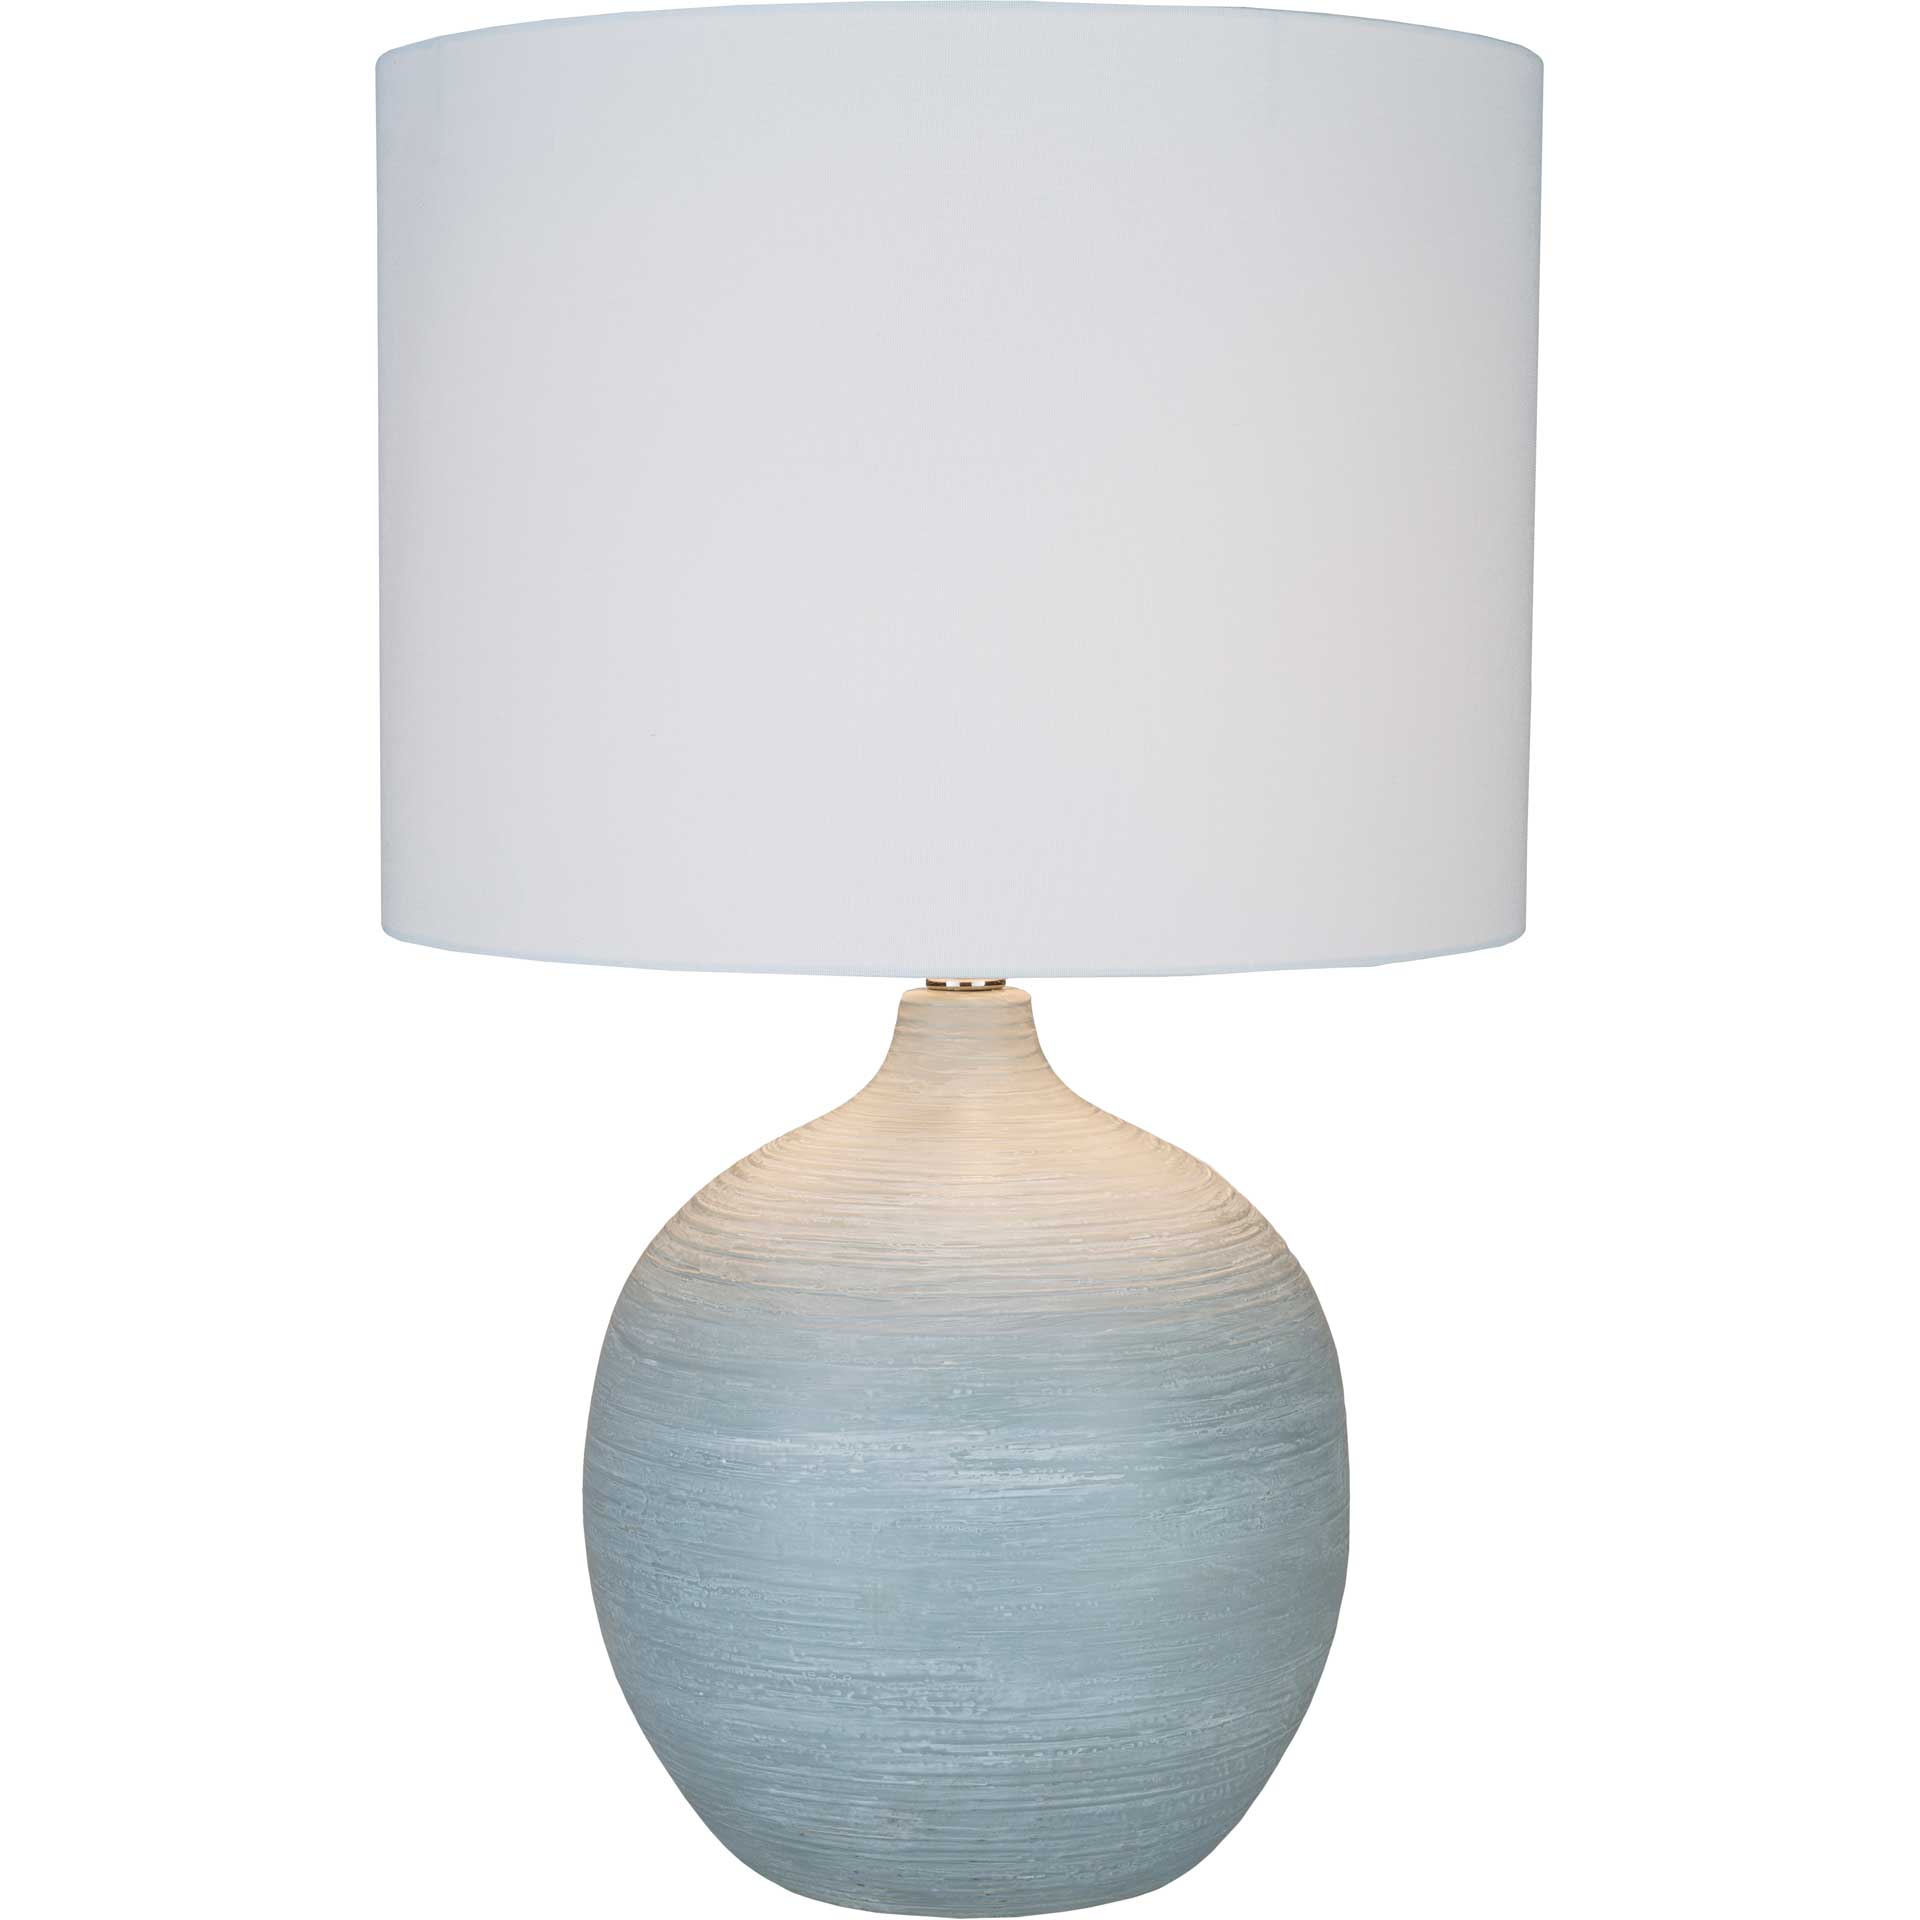 Bruno Table Lamp Light Gray/White/Gray